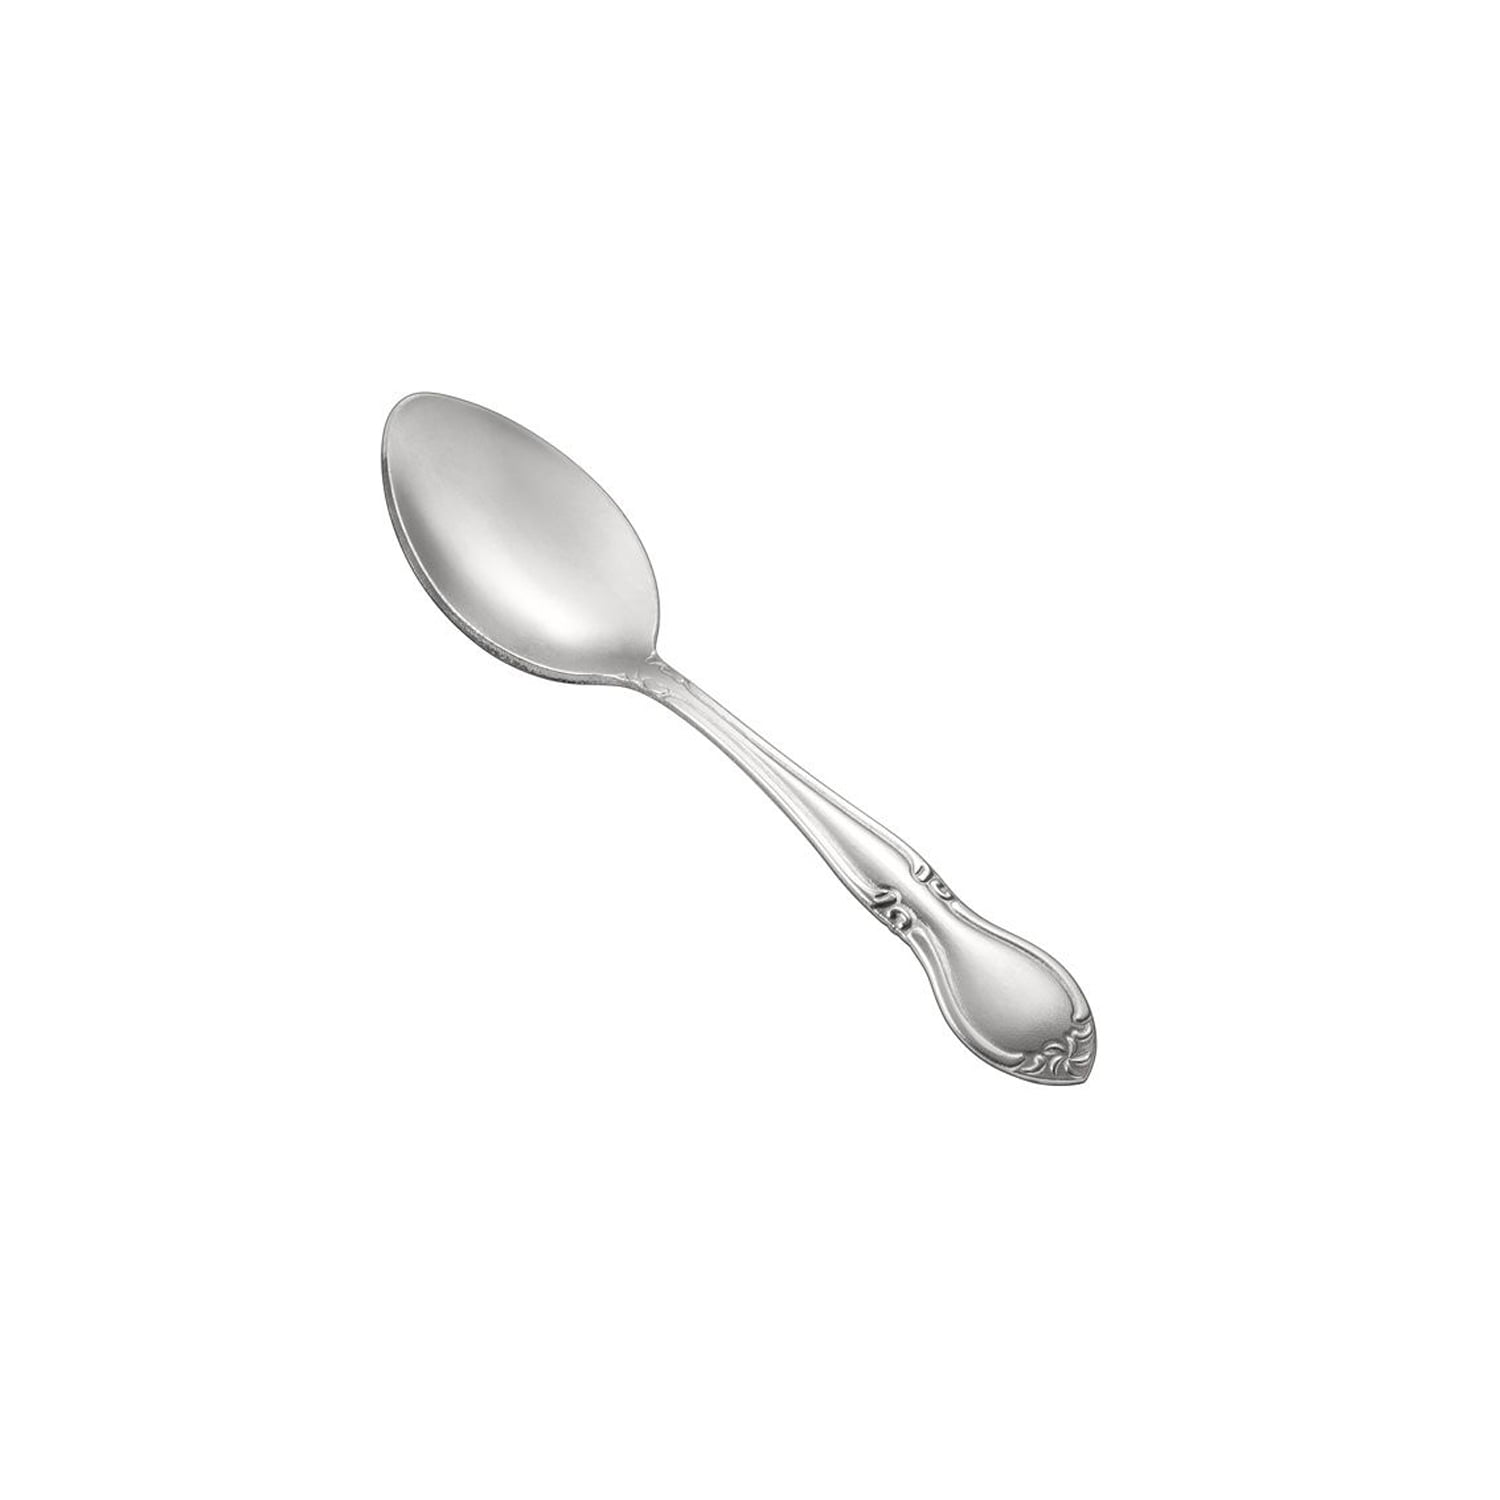 Buy Coral Shakuntala Enterprises Silver Stainless Steel Spoon